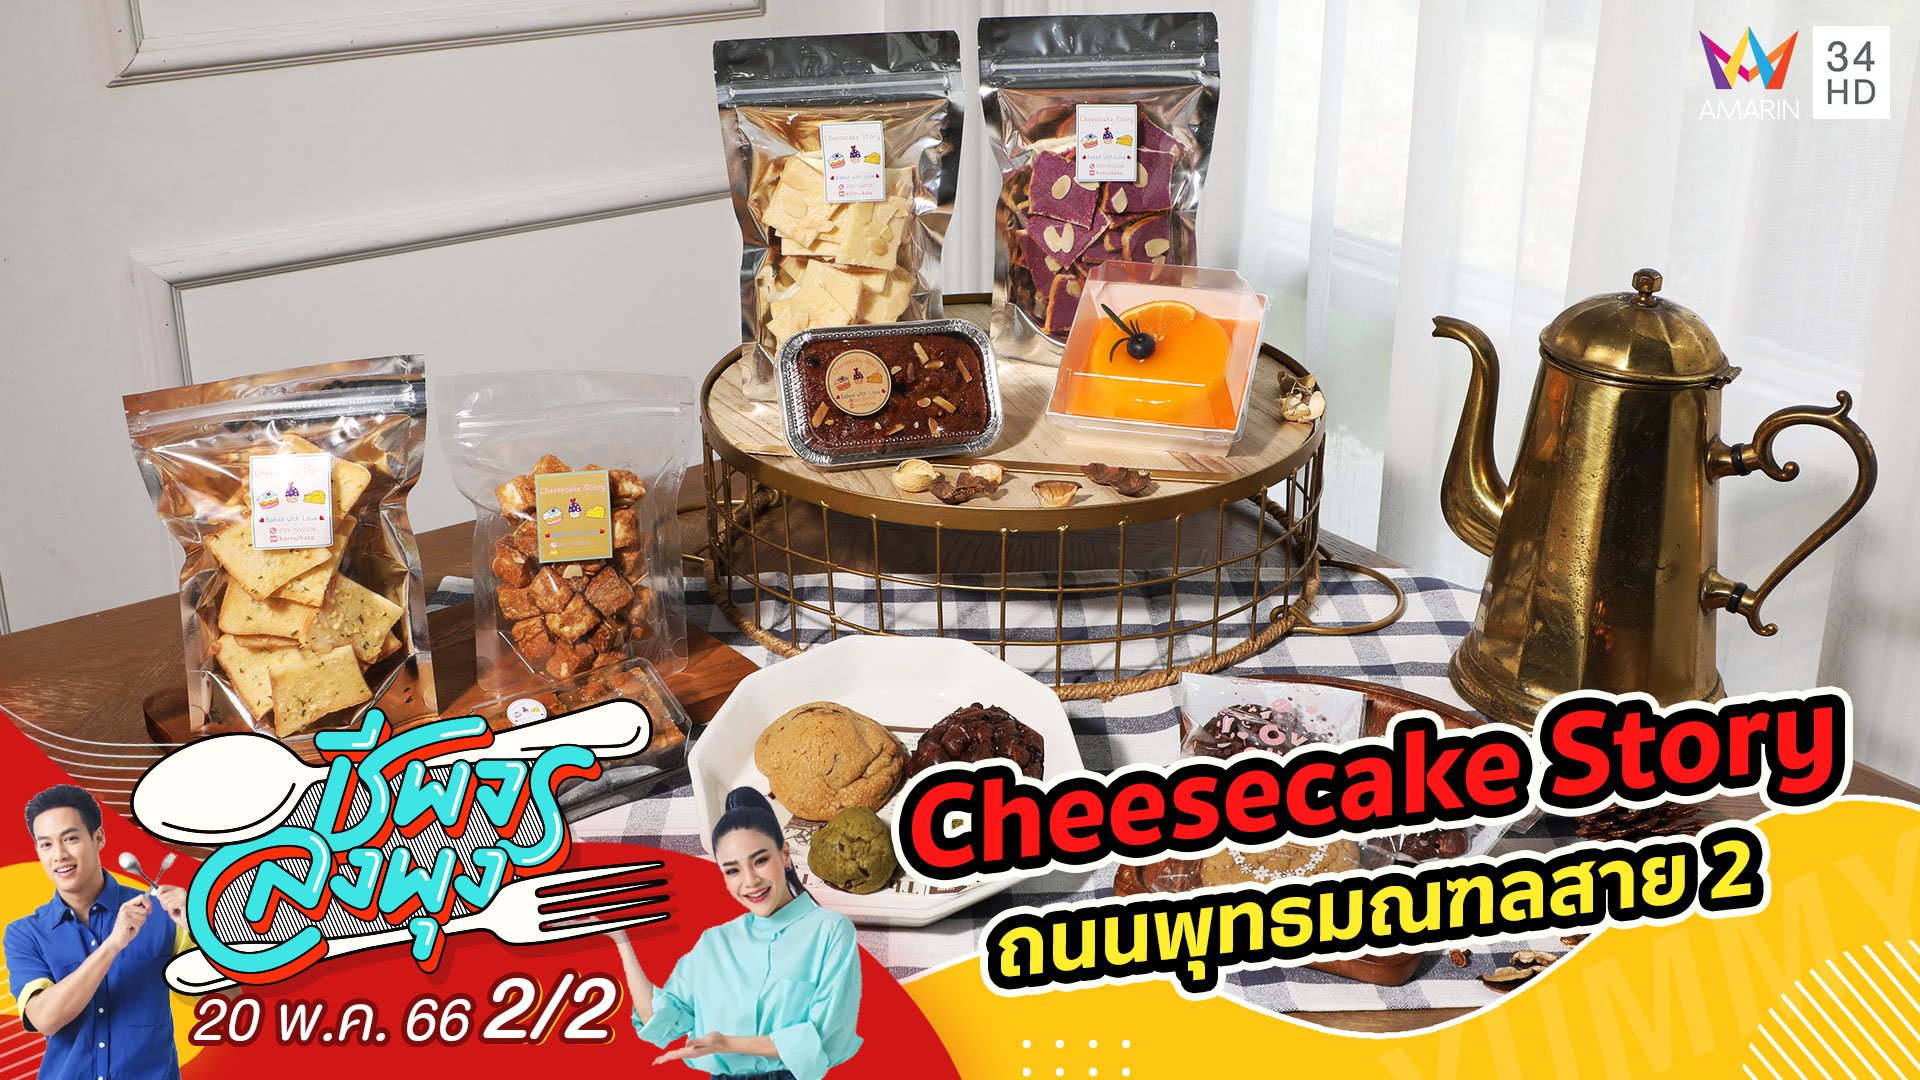 เมนูเบเกอรี่โฮมเมดหลากหลาย @ ร้าน Cheesecake Story | ชีพจรลงพุง | 20 พ.ค. 66 (2/2) | AMARIN TVHD34